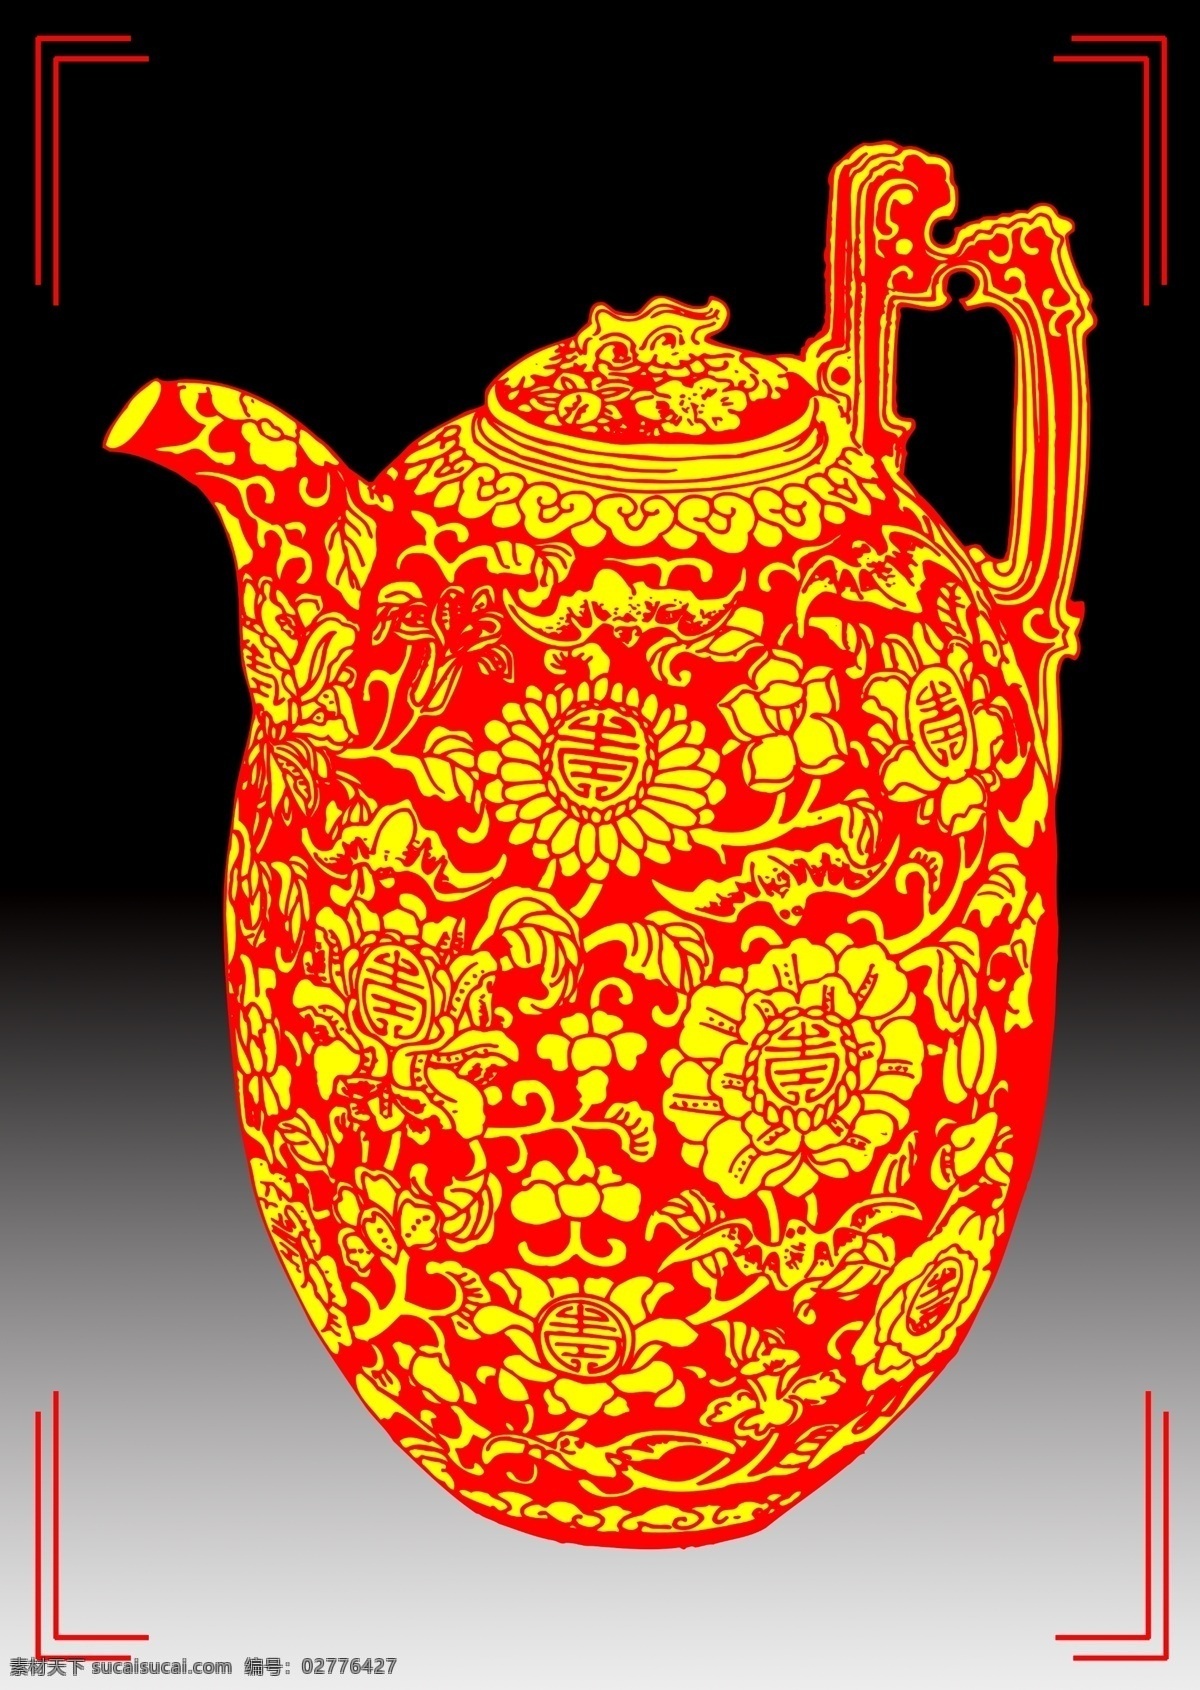 创意 中国 红 黄 釉瓷 瓶 中国红 黄釉瓷罐 红黄瓷罐 红黄瓷瓶 中国红瓷瓶 瓷瓶 黄釉瓷 黄釉瓷瓶 陶瓷罐 罐子 瓷罐 中国风 中国陶瓷 中国瓷器 瓷器